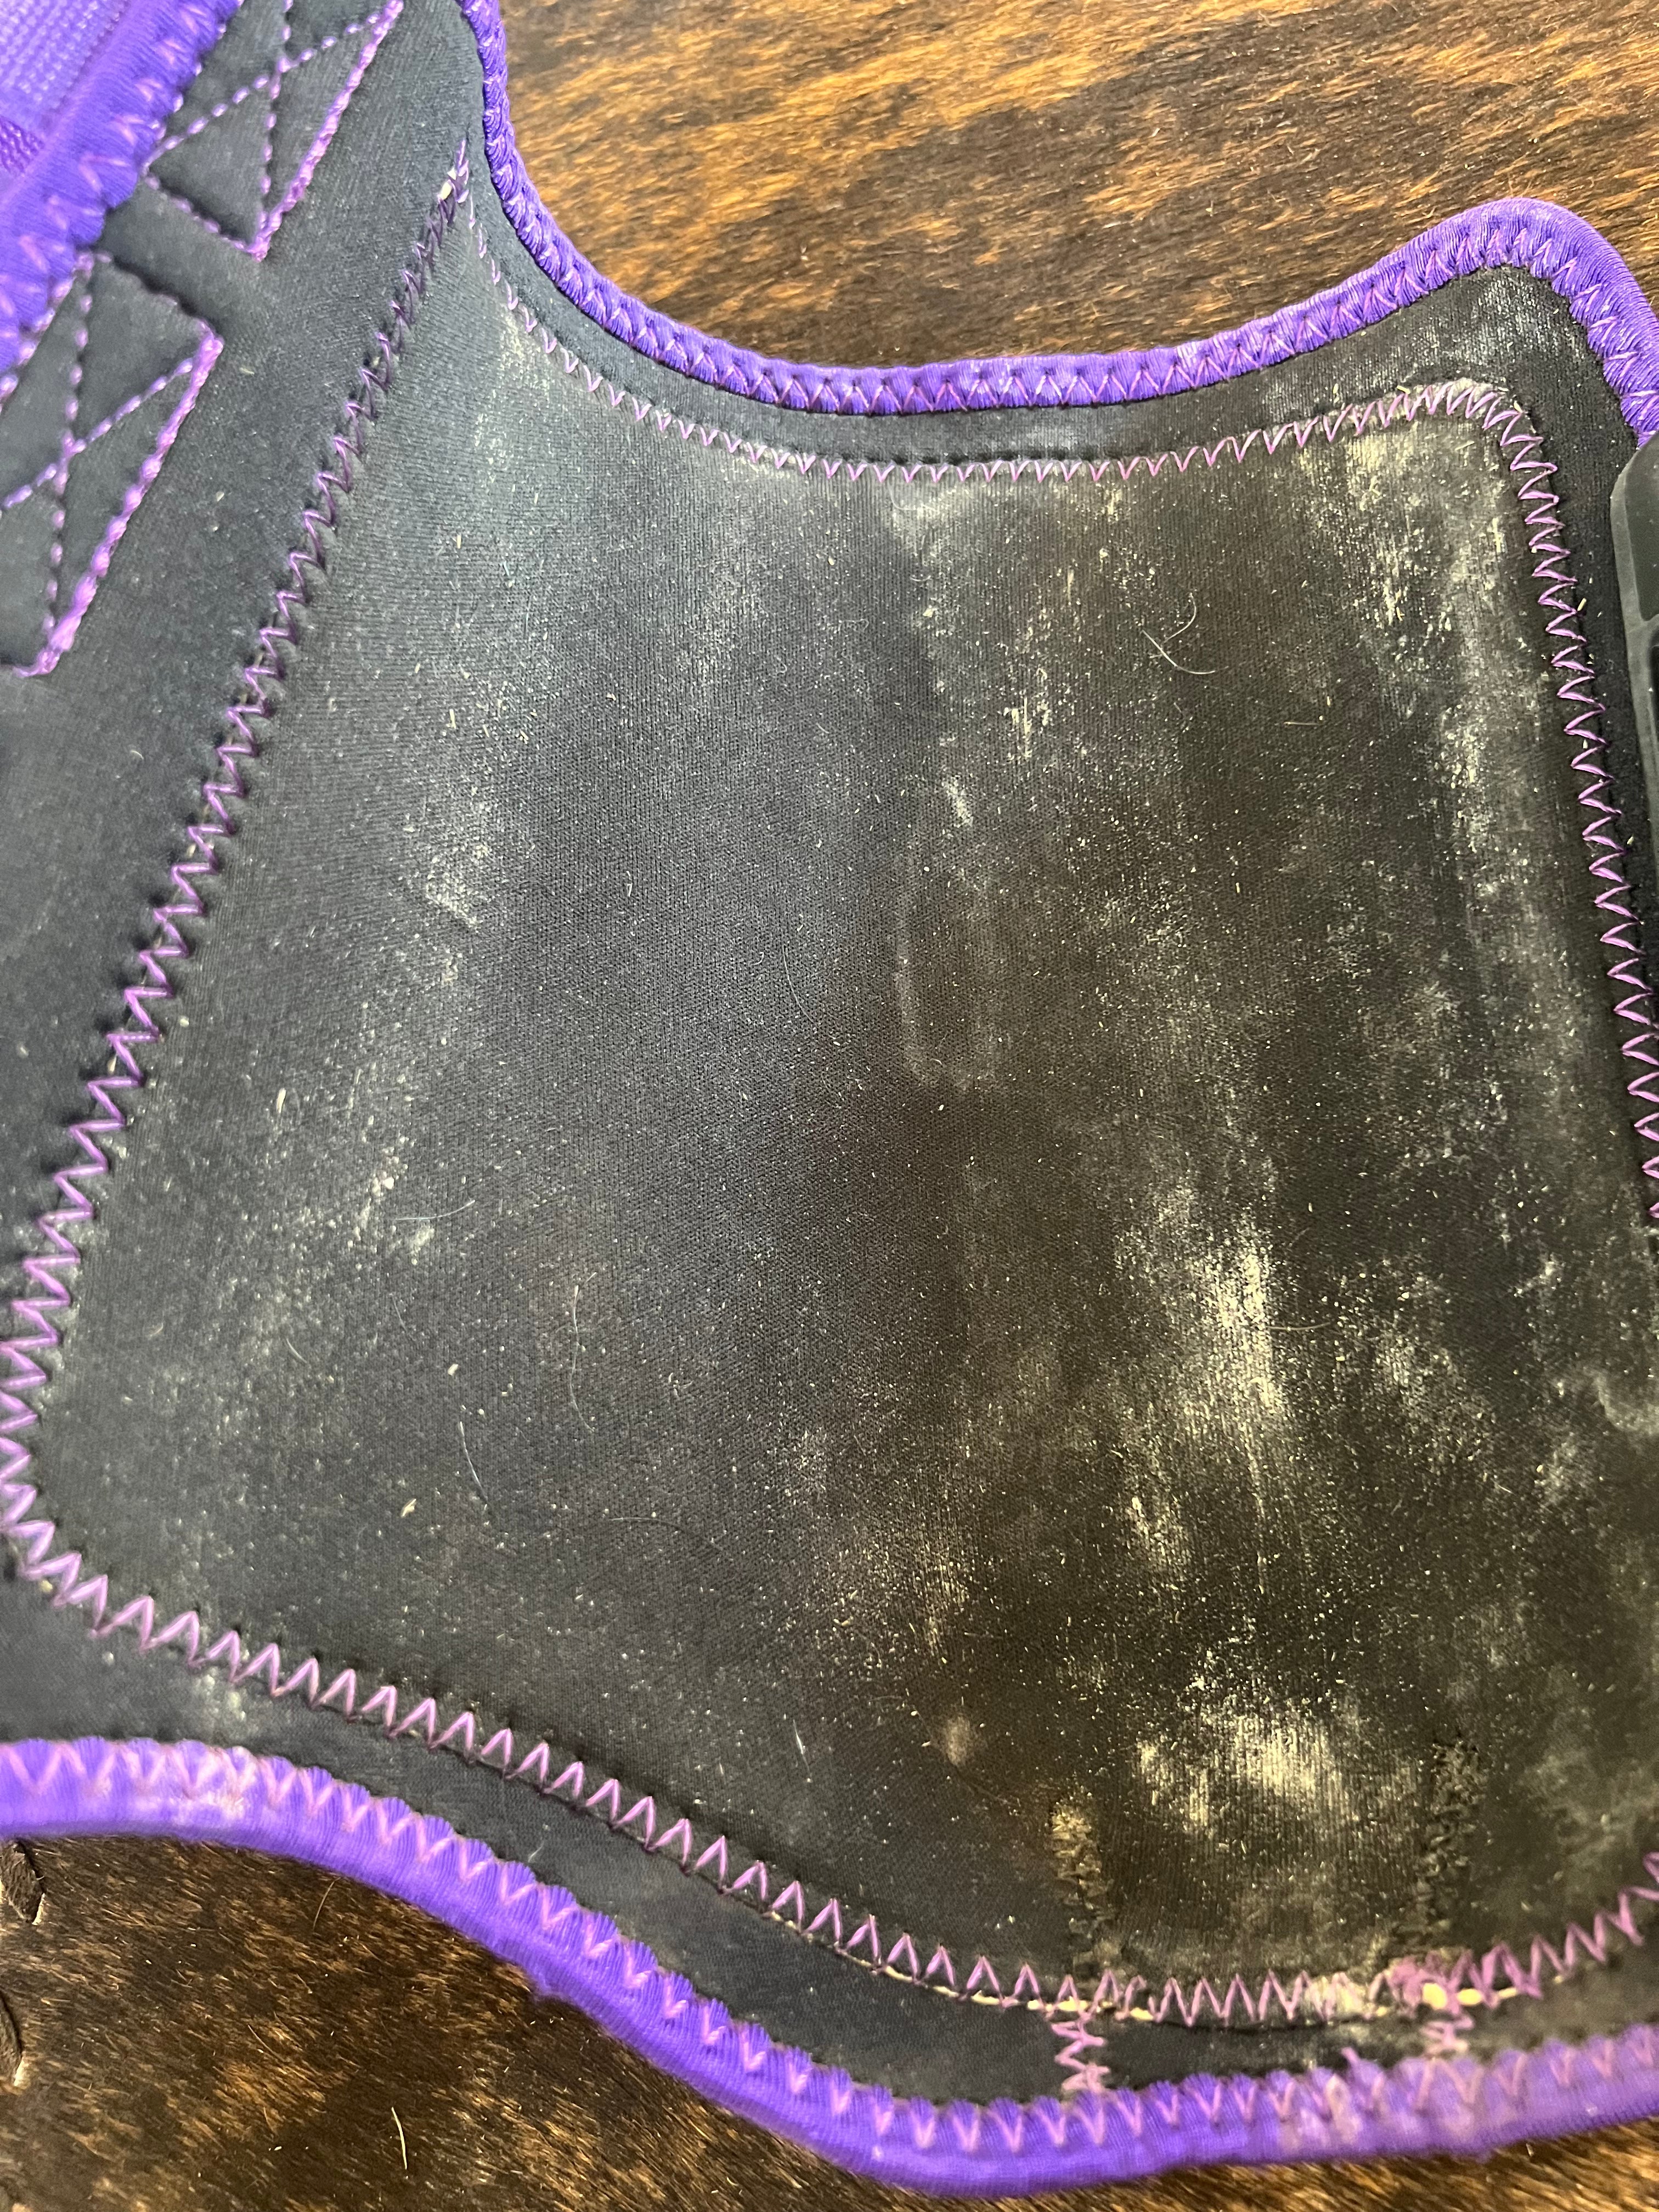 Tacktical Front Splint Boots - Purple - Size M